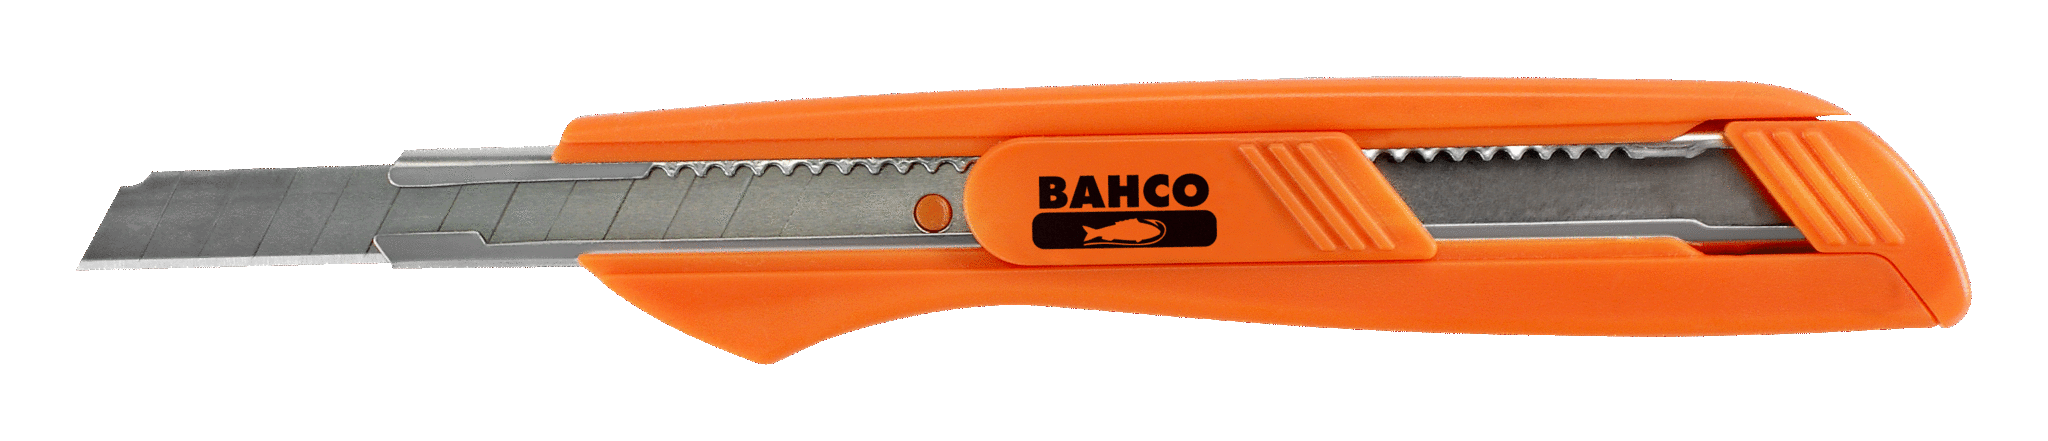 Nóż z odłamywanym ostrzem 9 mm (3 szt.) BAHCO